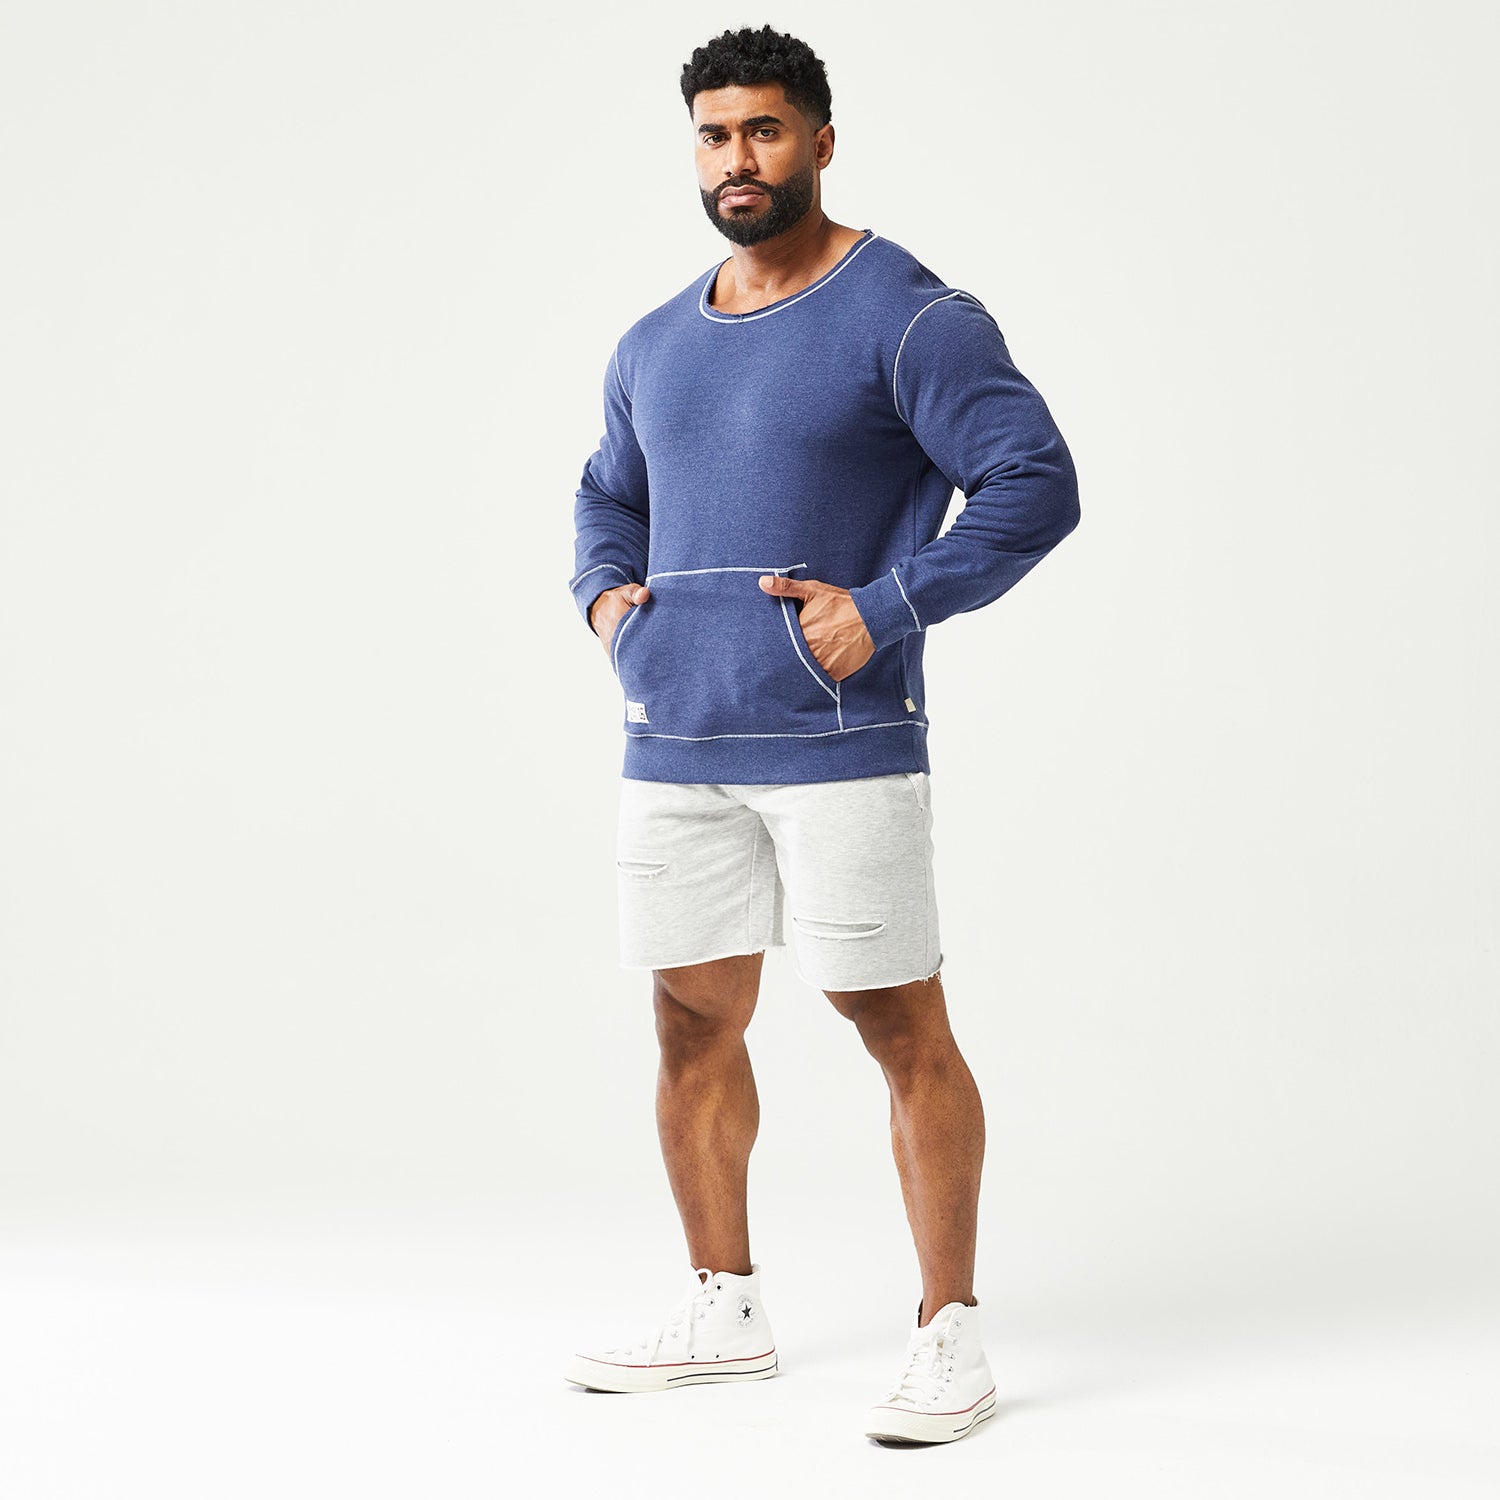 squatwolf-gym-wear-golden-era-crew-sweatshirt-patriot-blue-marl-workout-hoodies-for-men